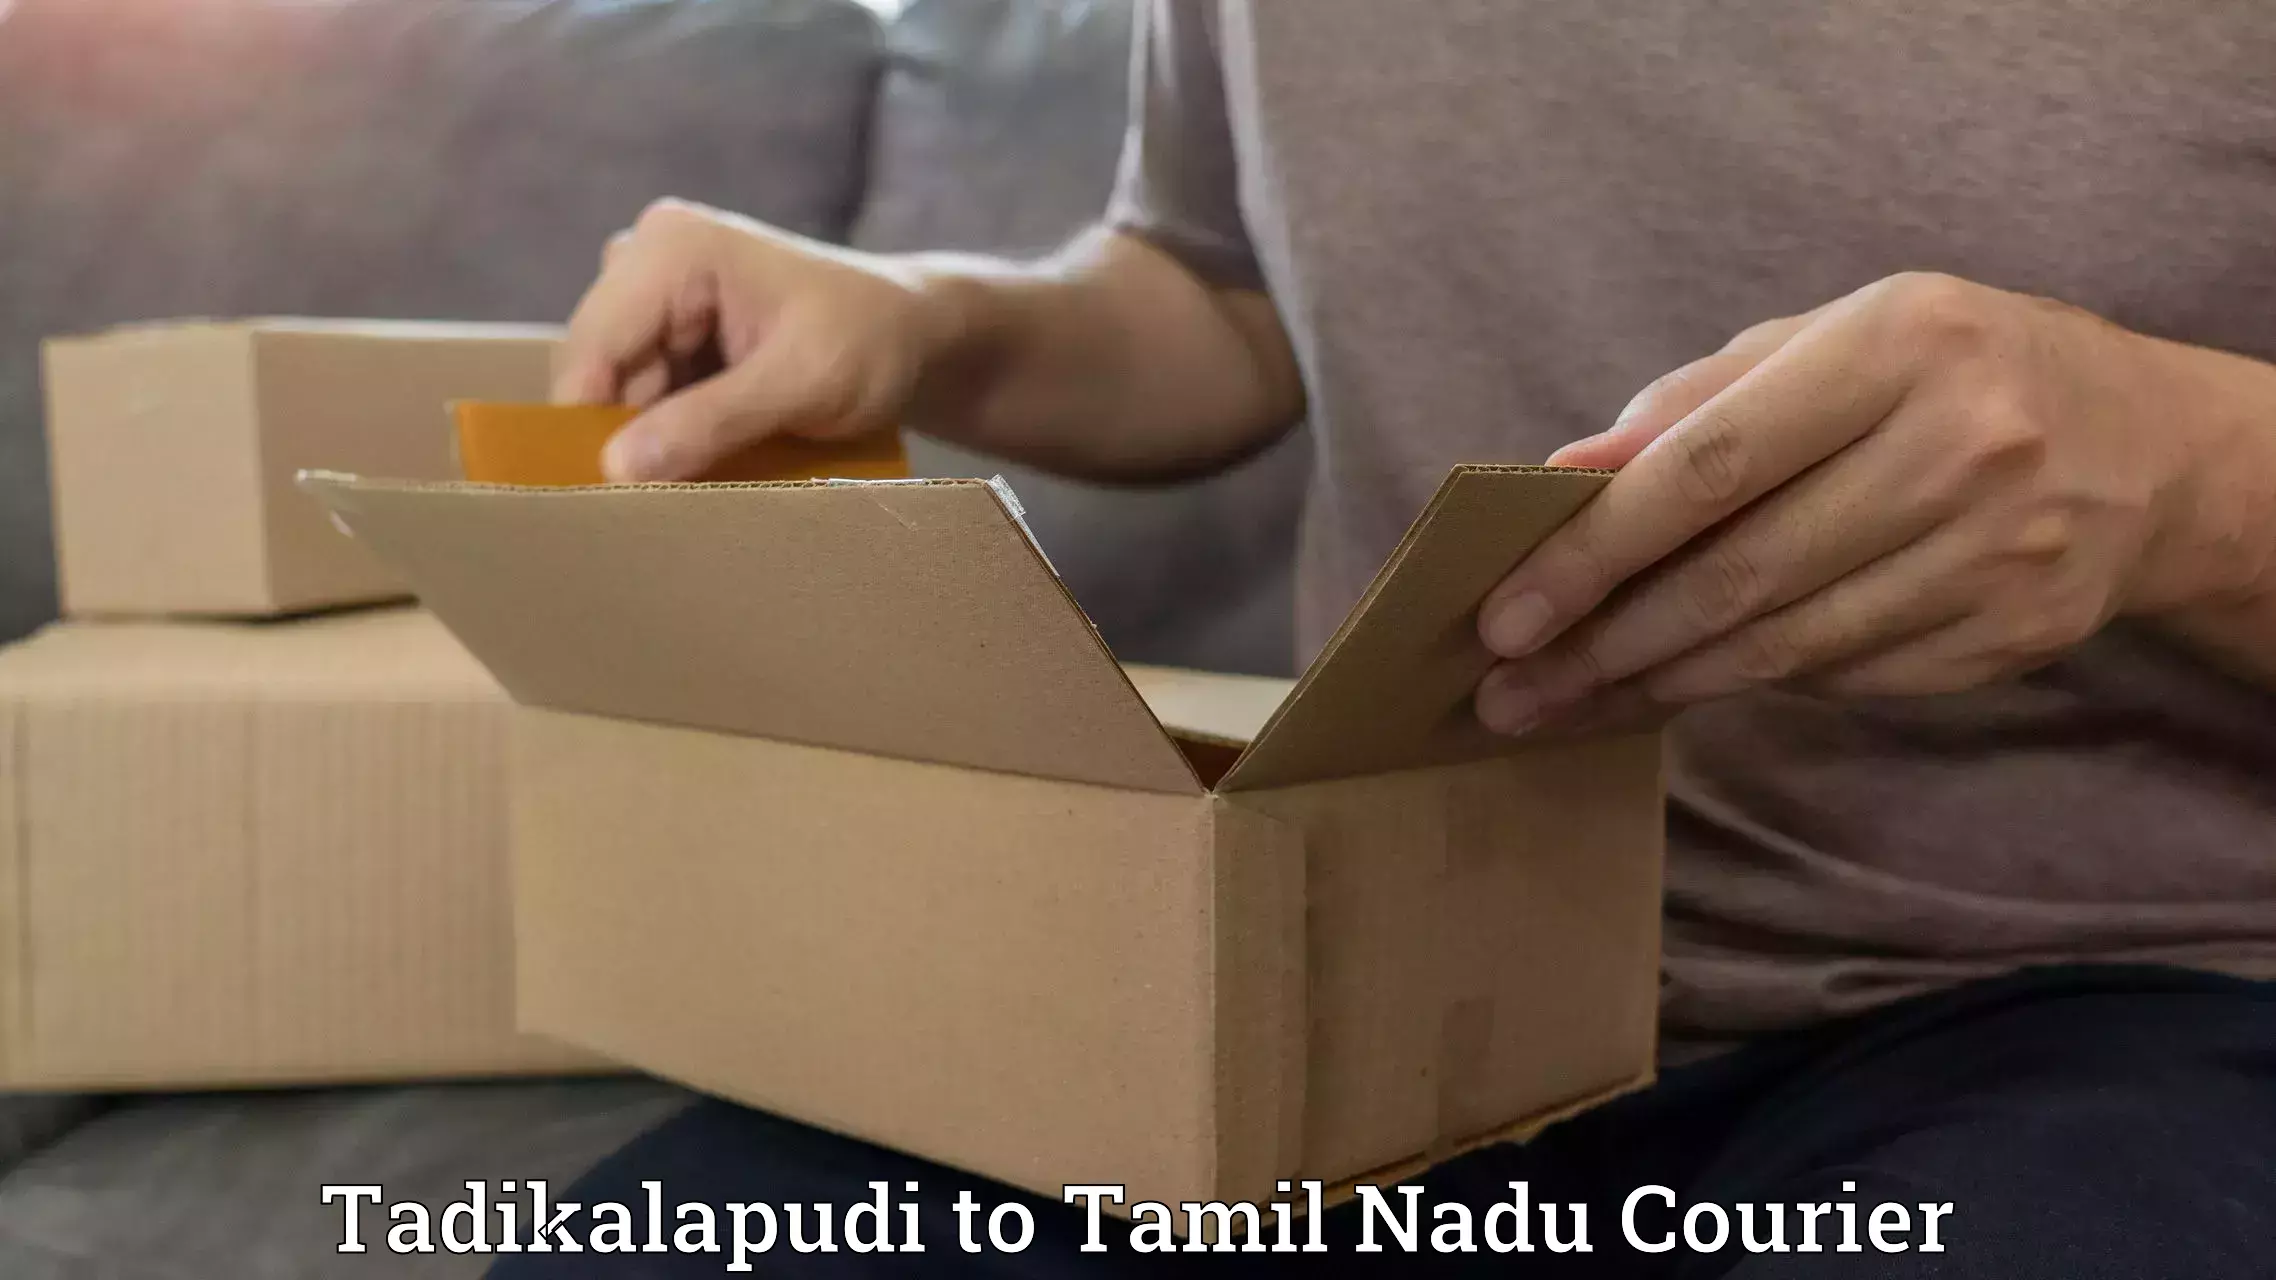 Customizable shipping options Tadikalapudi to Rathinasabapathy Puram